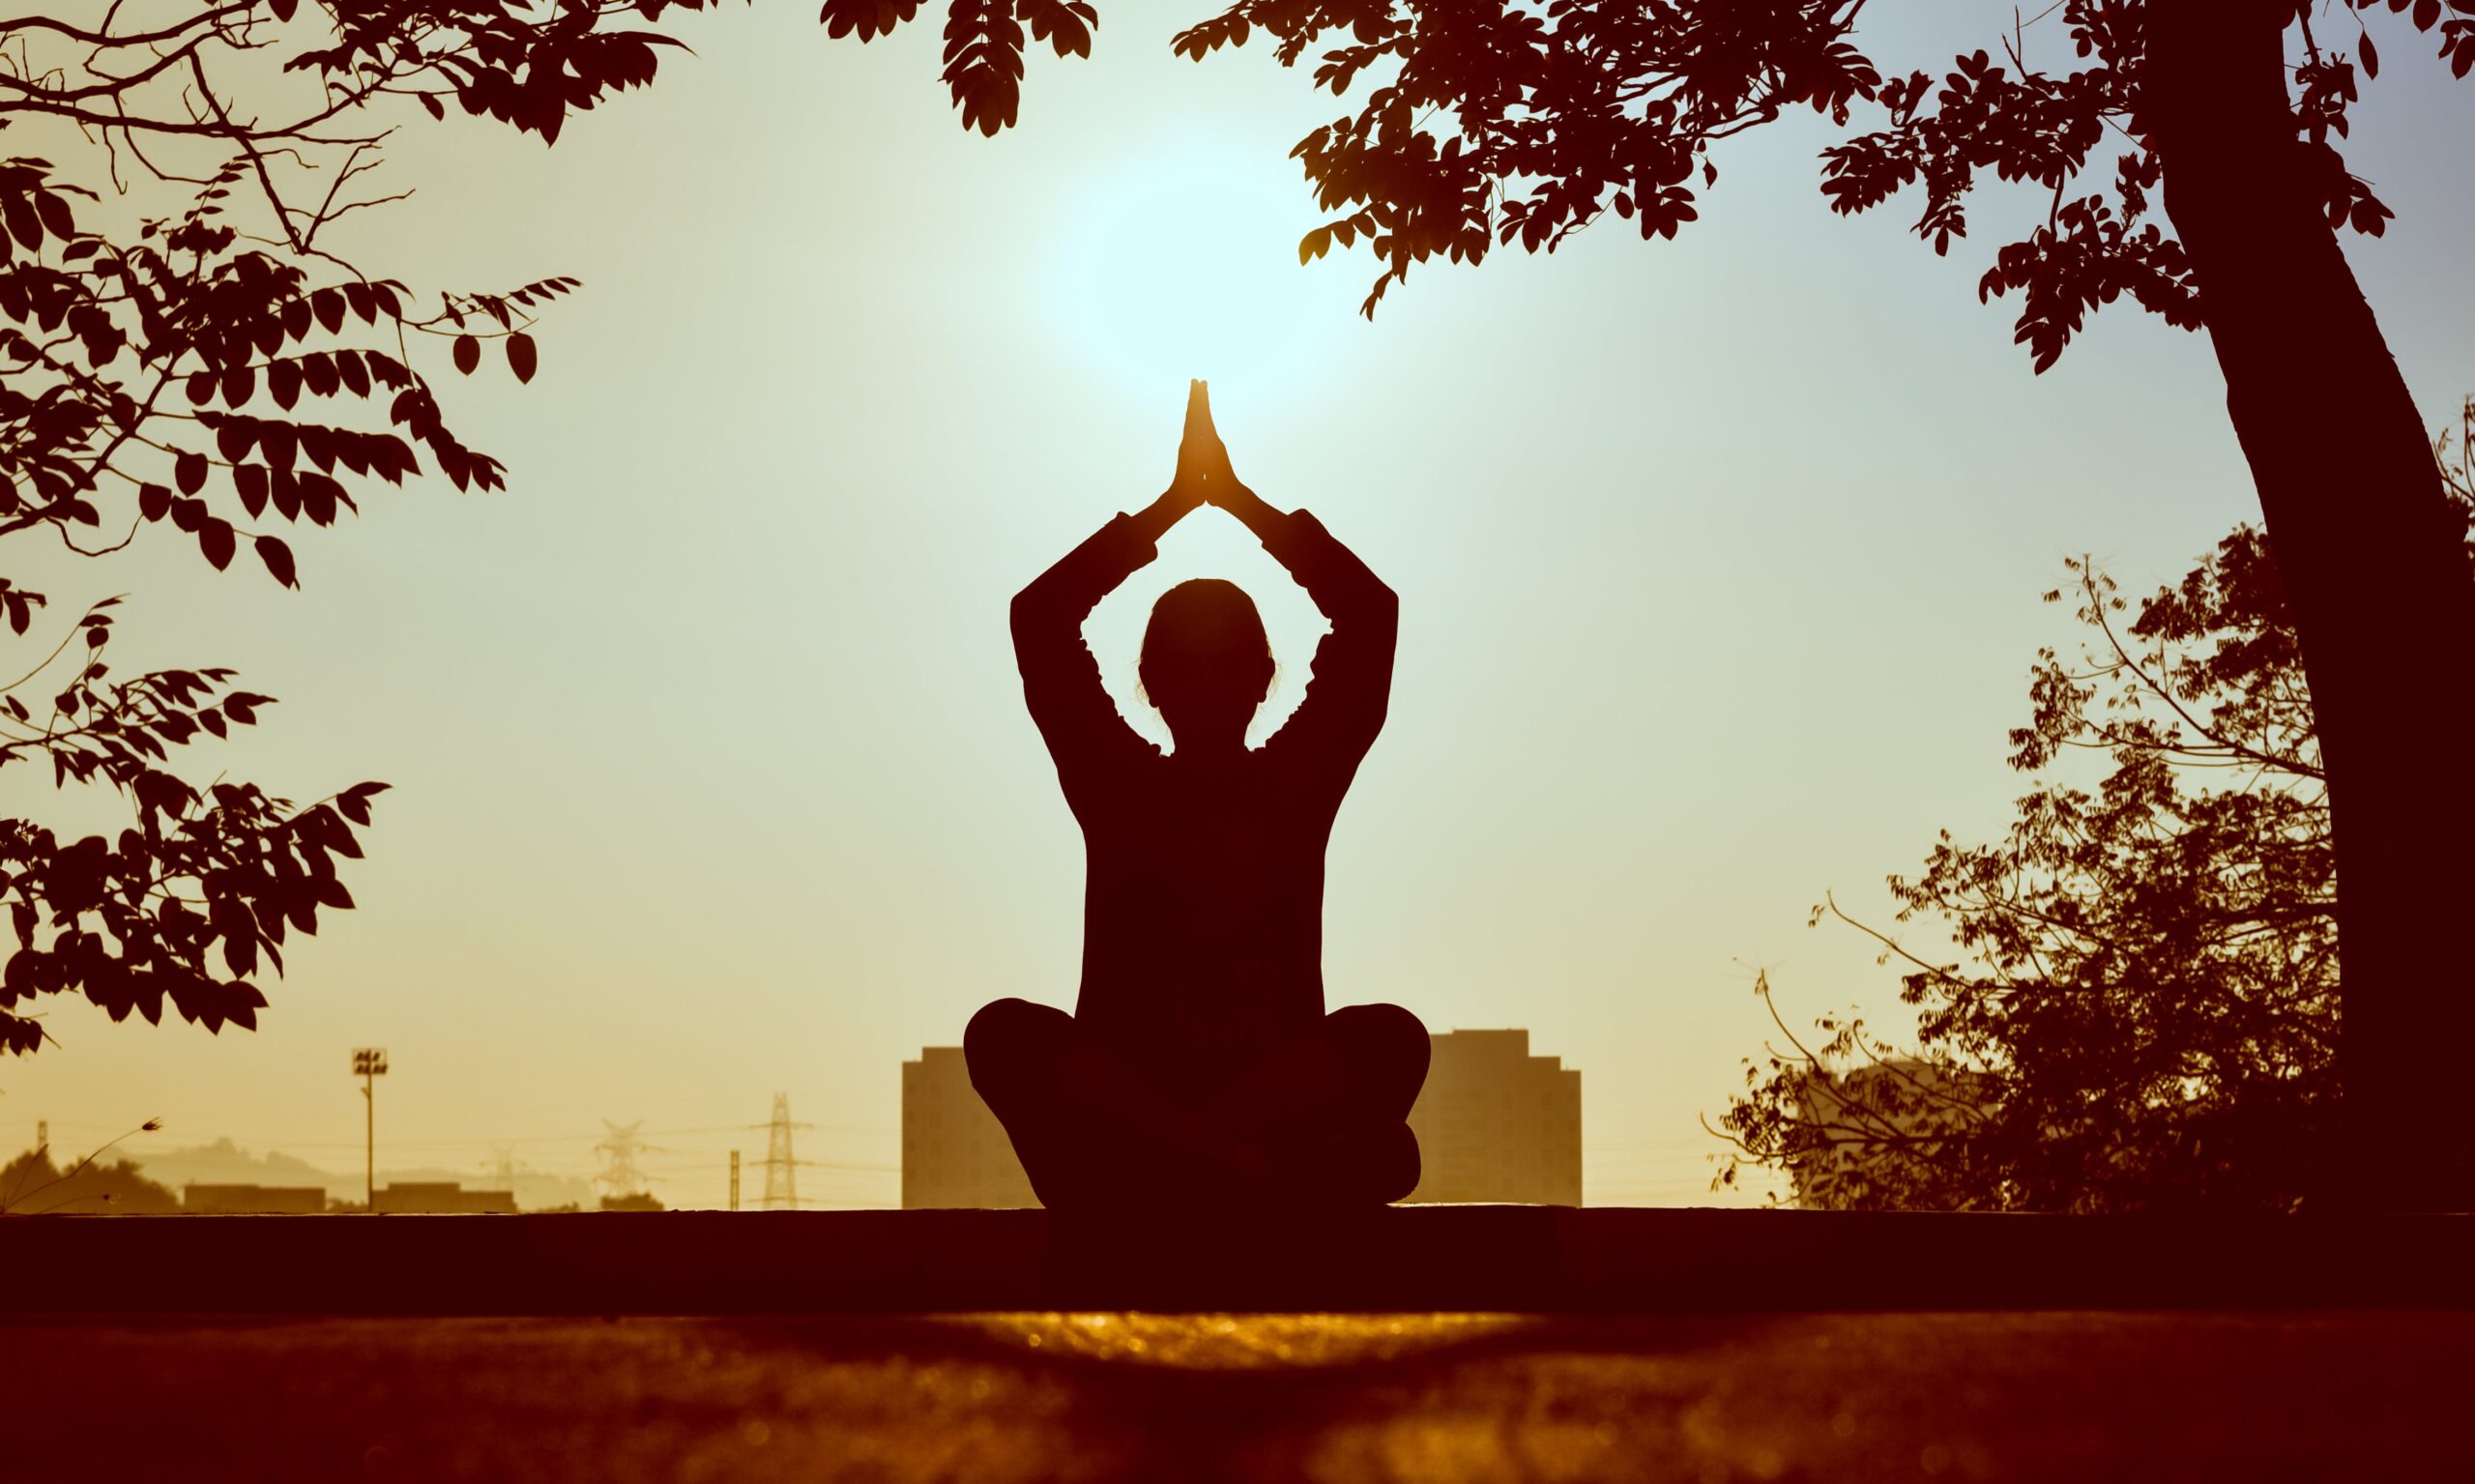 Una figura in controluce si immerge nello yoga, con le mani giunte in un gesto di serenità. Le linee fluide del corpo trasmettono un senso di armonia e concentrazione. Un momento di pace interiore in cui il corpo si congiunge con la mente nella pratica dello yoga.